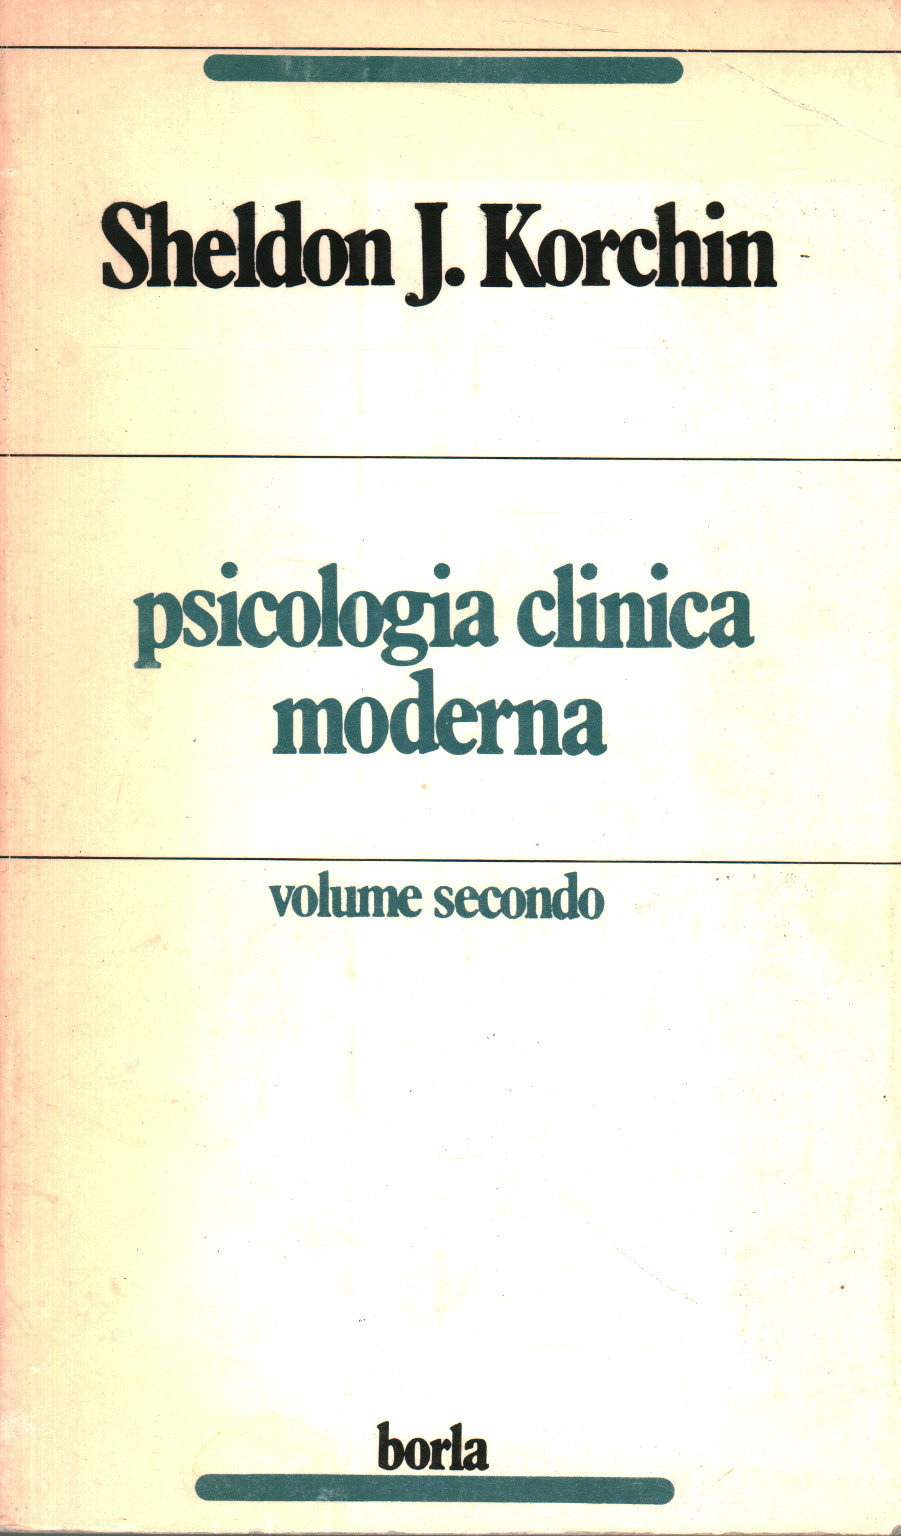 Psicologia clinica moderna (volume secondo), s.a.